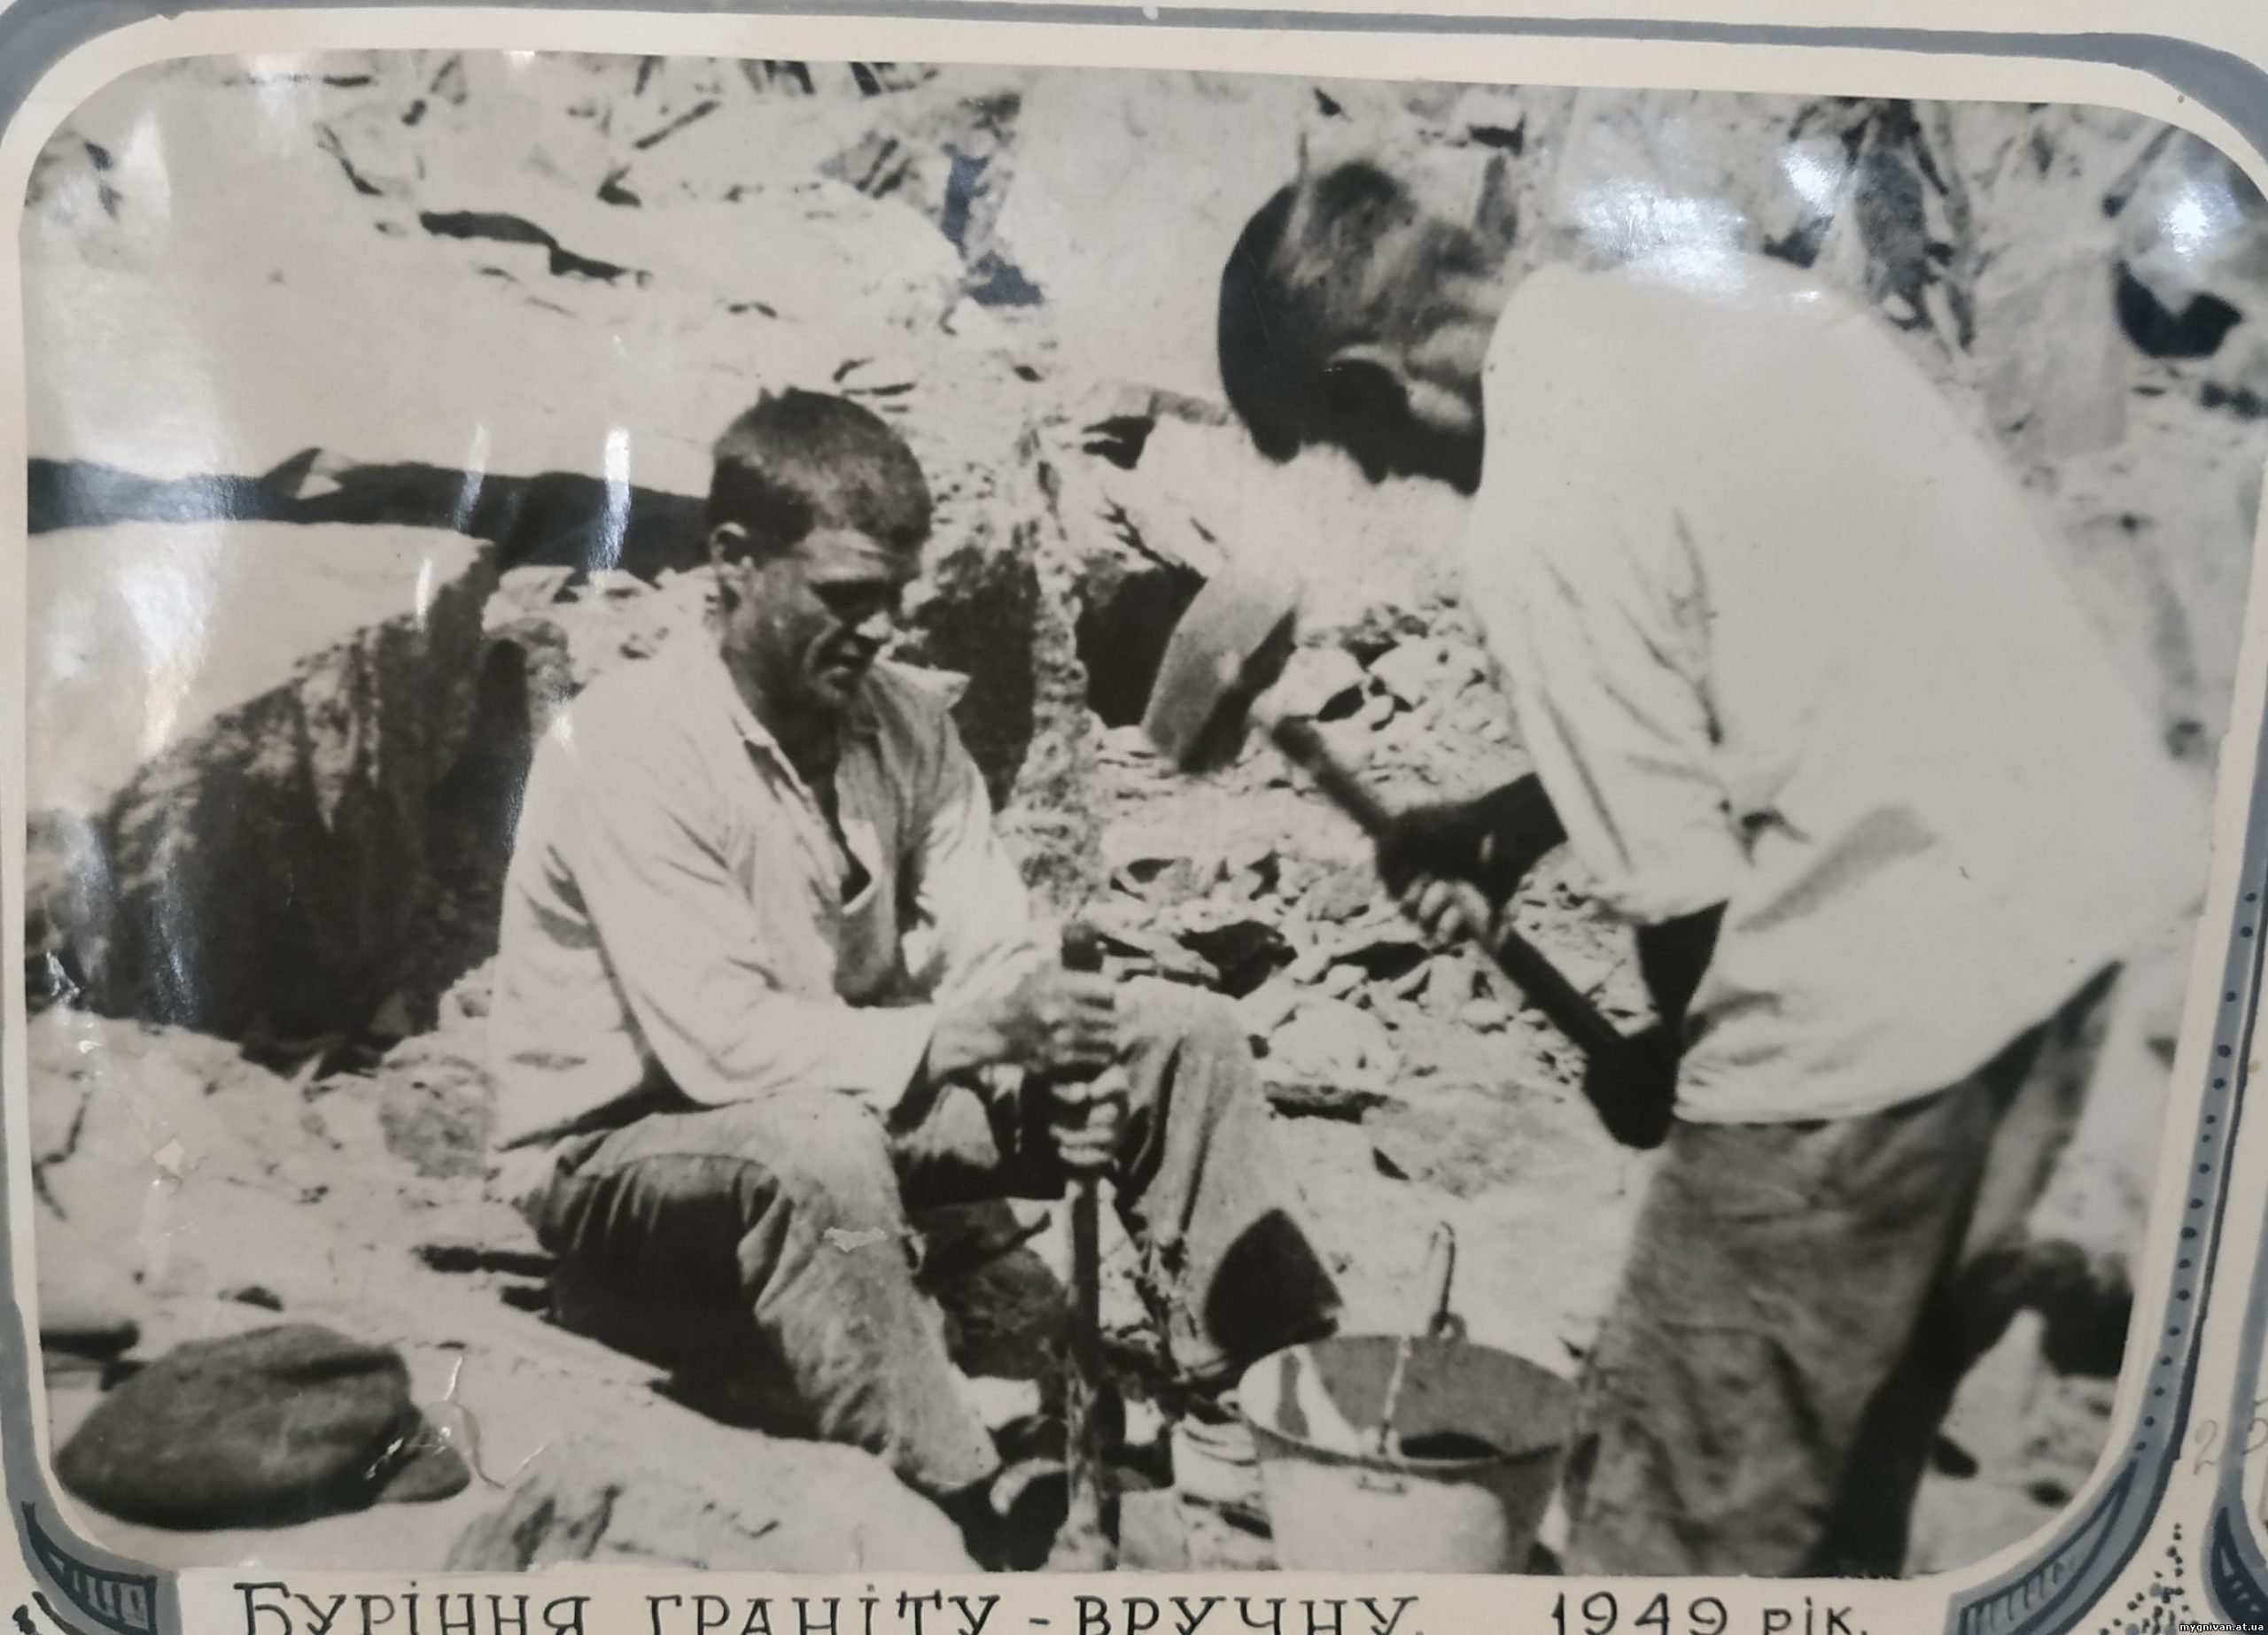 Manual drilling of granite in 1949